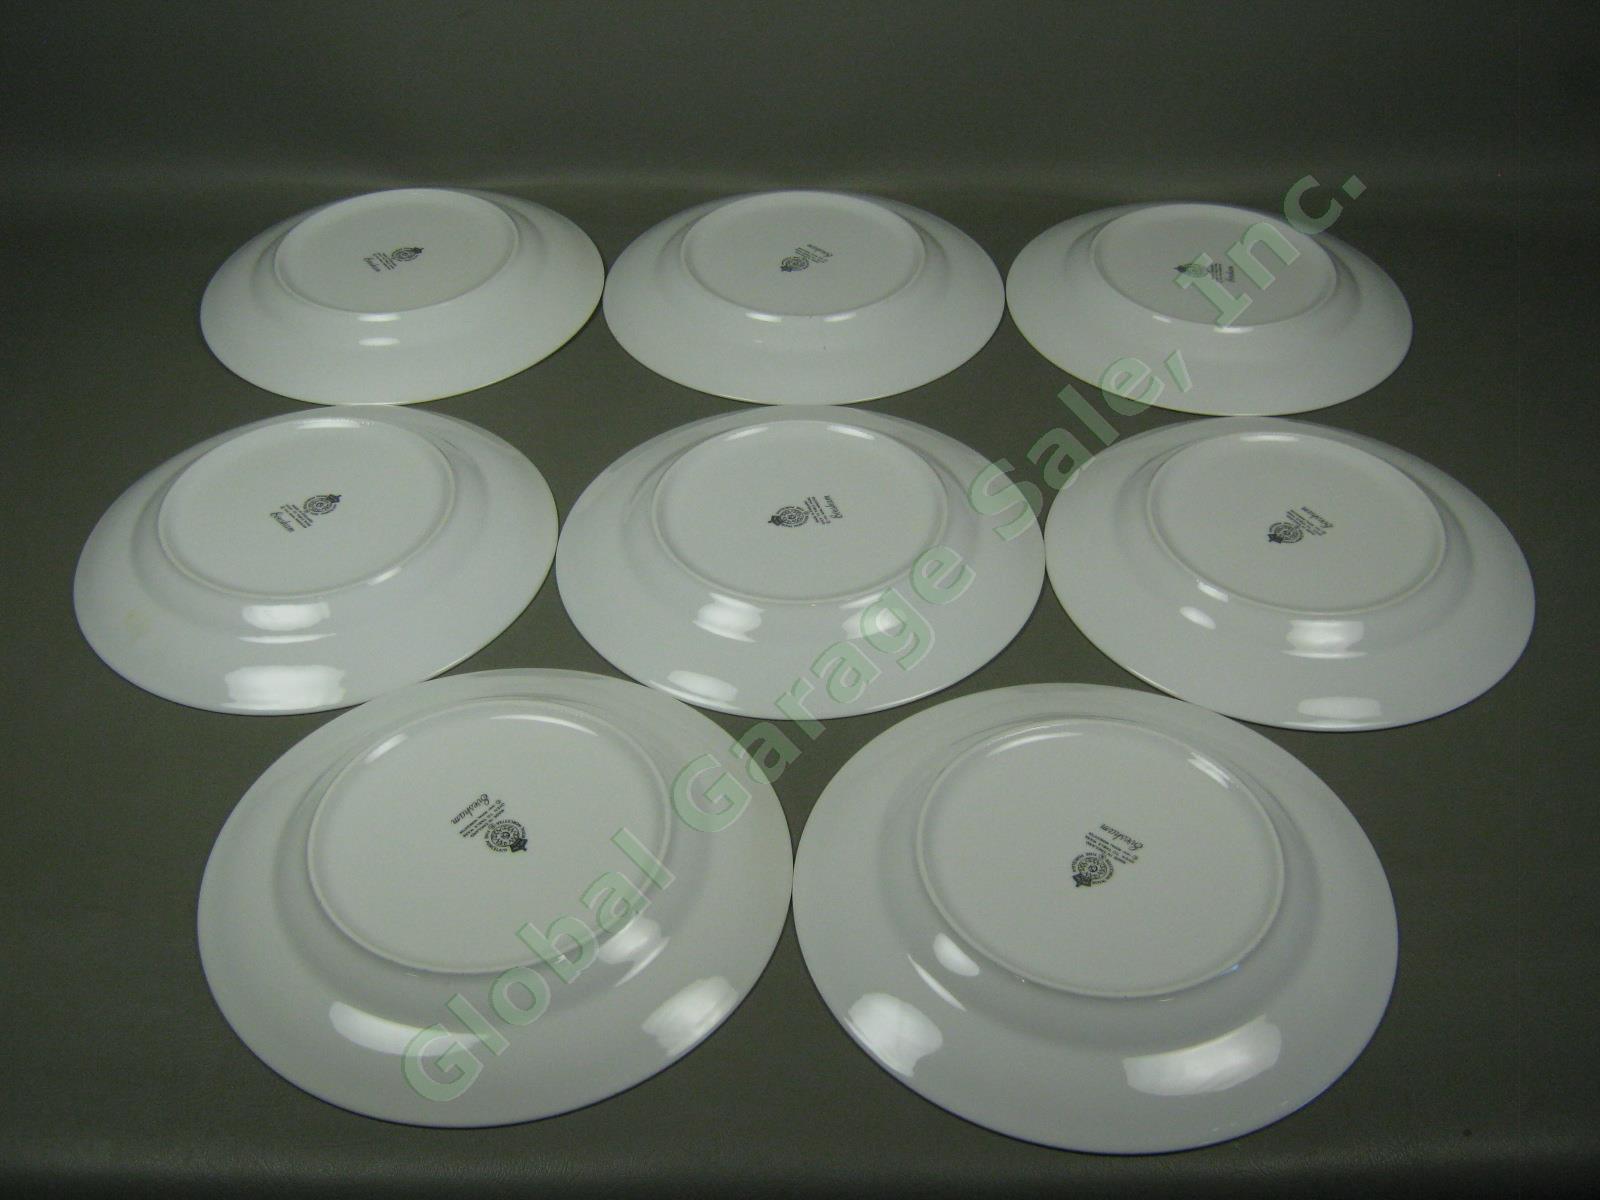 8 Vtg 1961 Royal Worcester Evesham Porcelain China 10" Dinner Plate Set Lot 2